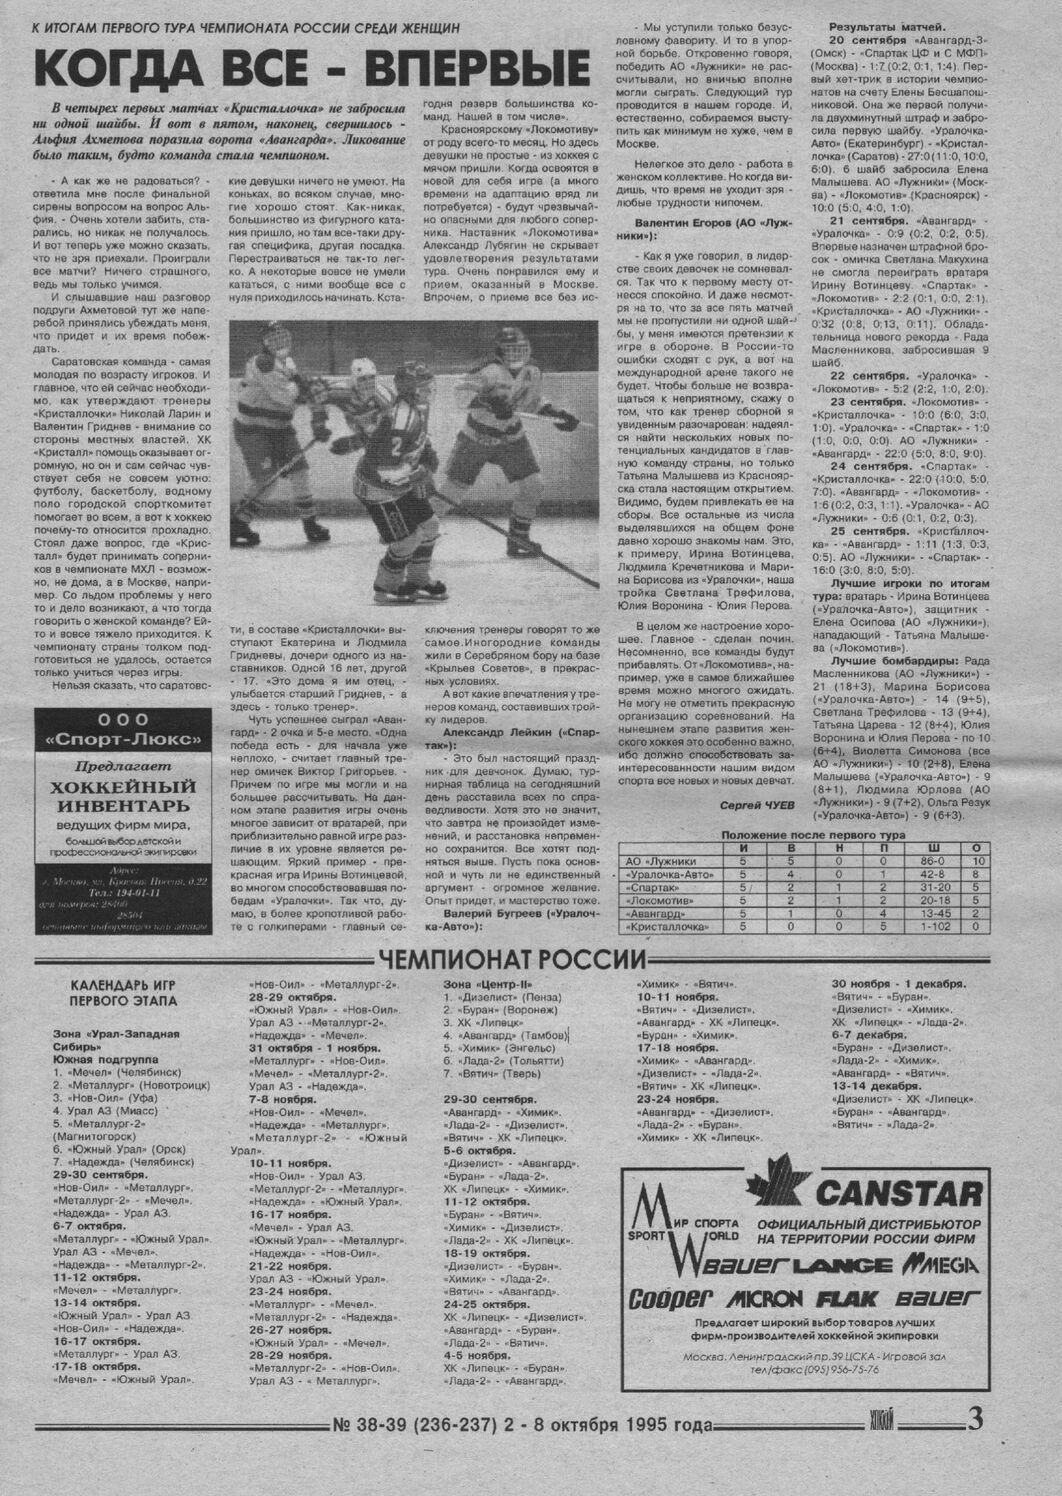 Еженедельник "Хоккей" от 1995г.